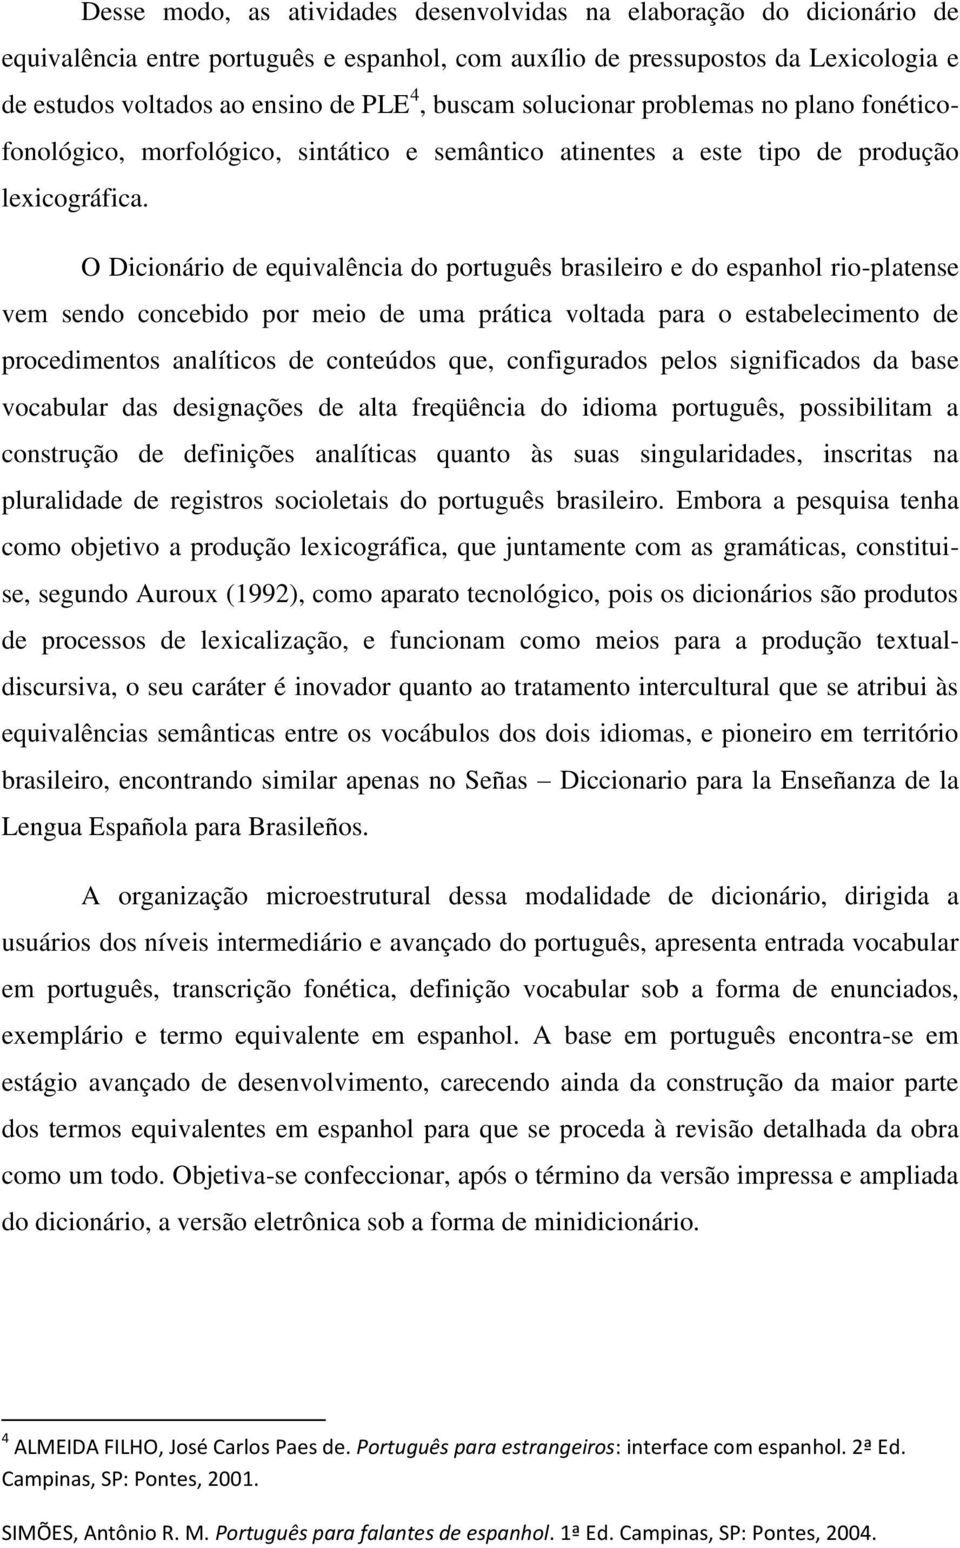 O Dicionário de equivalência do português brasileiro e do espanhol rio-platense vem sendo concebido por meio de uma prática voltada para o estabelecimento de procedimentos analíticos de conteúdos